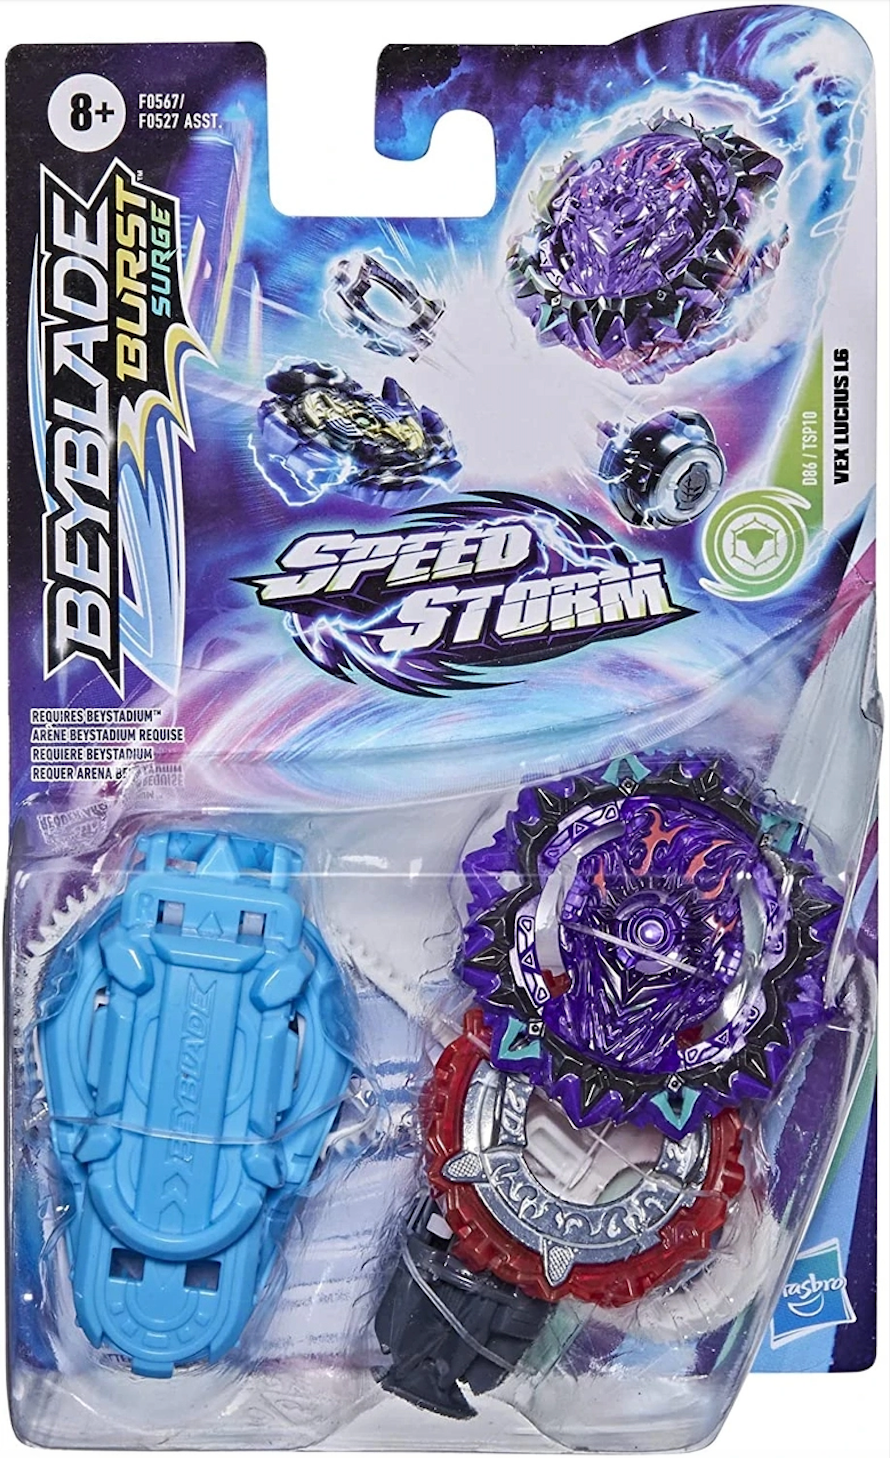 Beyblade Speedstorm Starter Pack